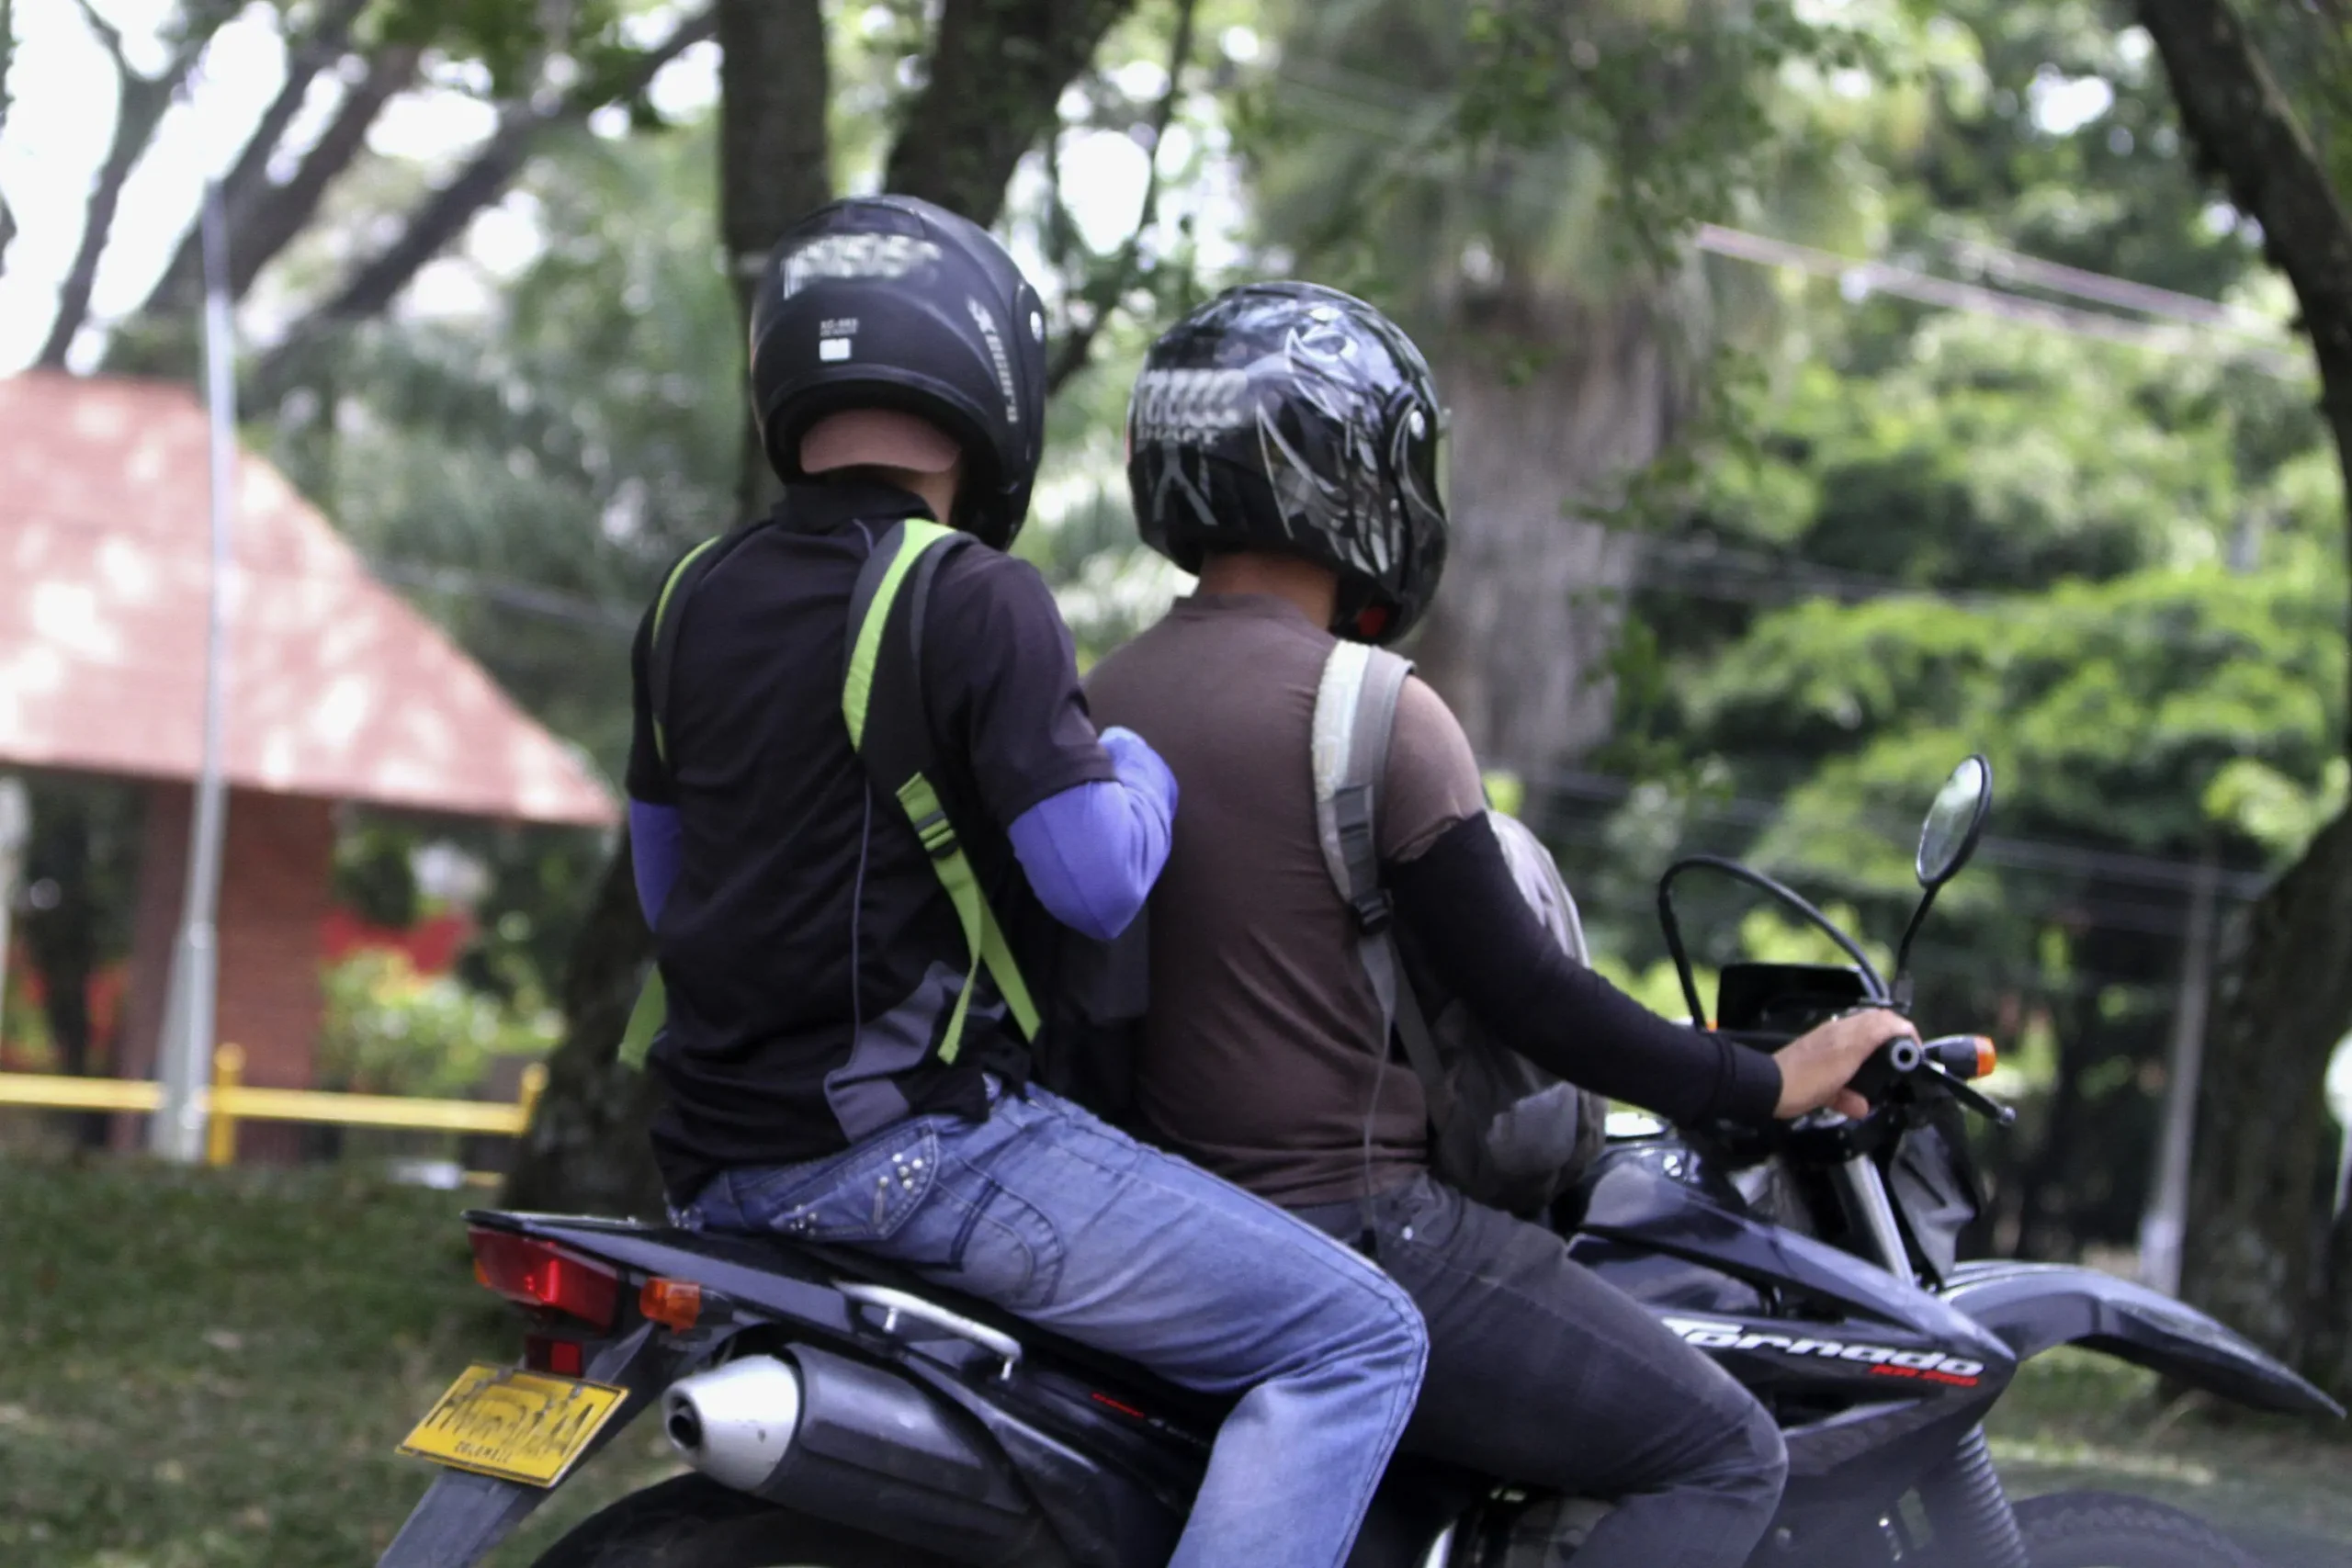 leyes de transito para motos en colombia - Qué restricciones tienen las motos en Bogotá